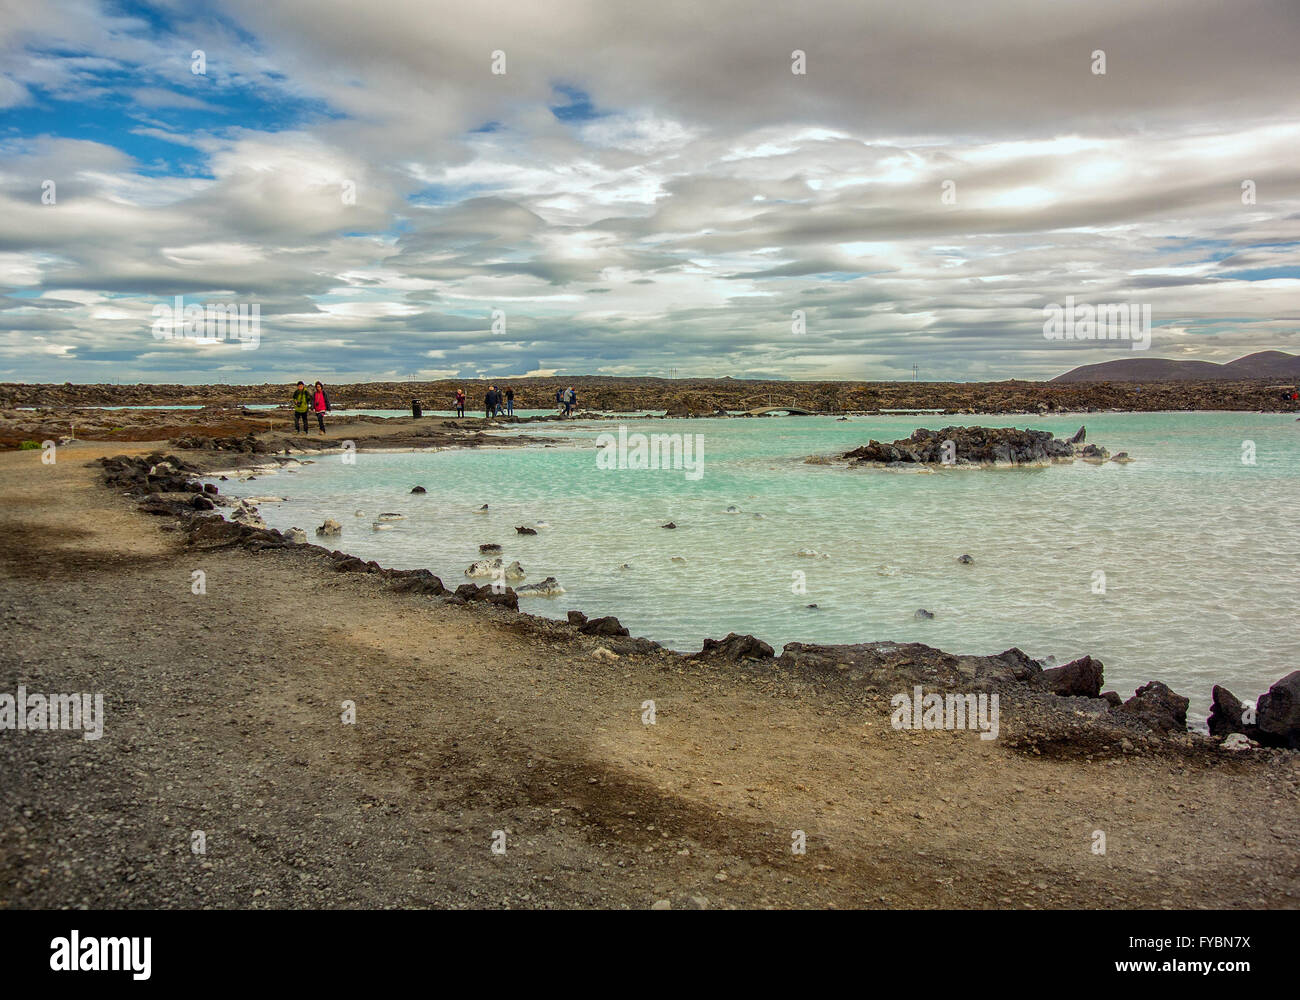 Península de Reykjanes, al suroeste de Islandia, Islandia. 5 ago, 2015. El famoso Blue Lagoon Spa Geotermal no zonas de baño están rodeados por campos de rocas volcánicas y rocas. Situado en un campo de lava en GrindavÃ-k en la península de Reykjanes, al suroeste de Islandia sus cálidas aguas son ricas en minerales. La laguna es alimentada por la salida de la planta de energía geotérmica Svartsengi cercanos. Un destino turístico favorito, es uno de los lugares más visitados de Islandia, donde el turismo se ha convertido en un creciente sector de la economía. © Arnold Drapkin/Zuma alambre/Alamy Live News Foto de stock